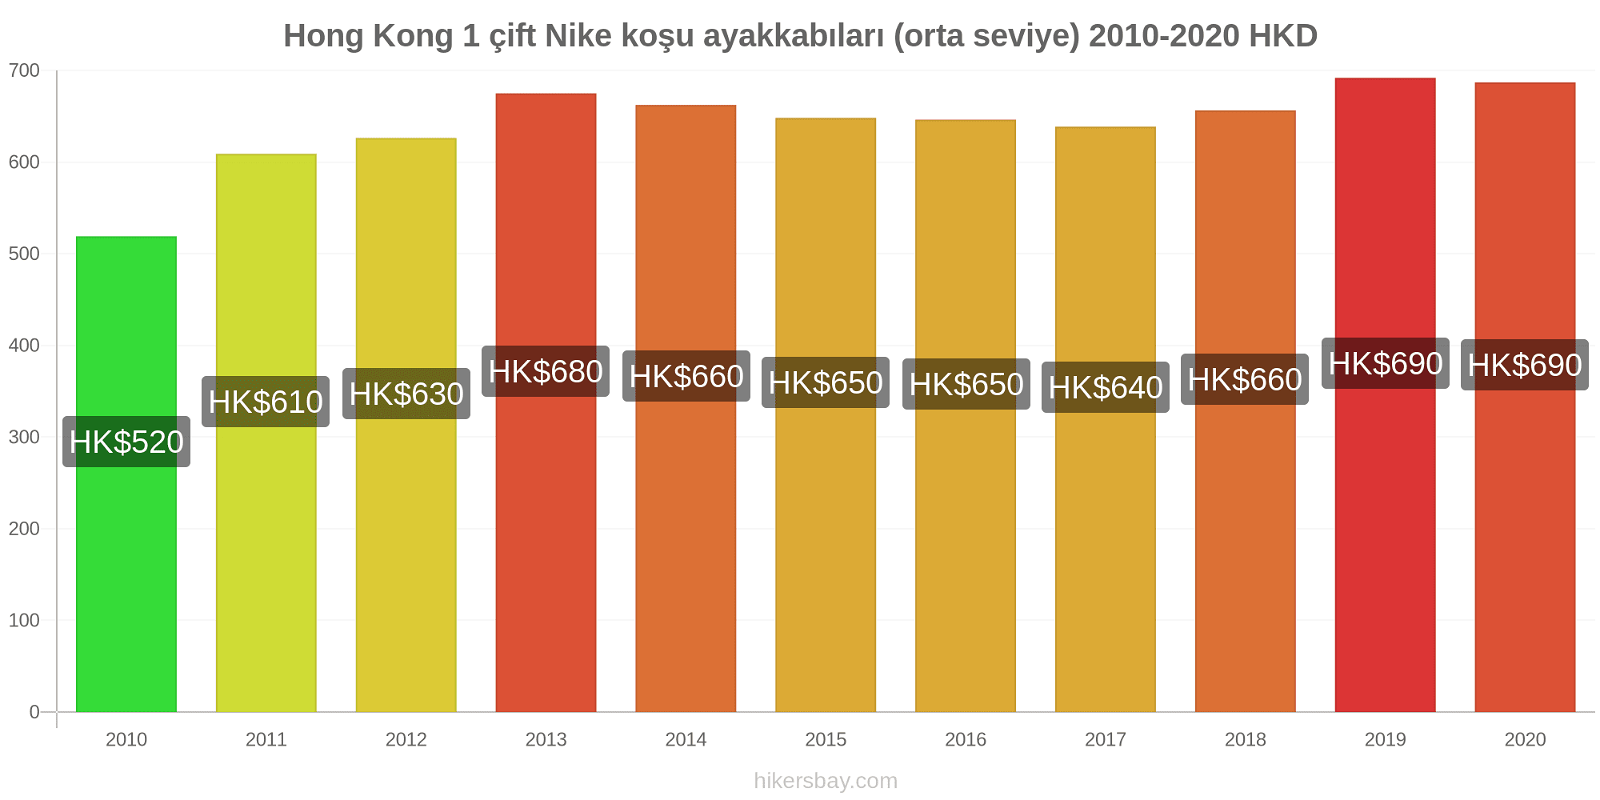 Hong Kong fiyat değişiklikleri 1 çift Nike koşu ayakkabıları (orta seviye) hikersbay.com